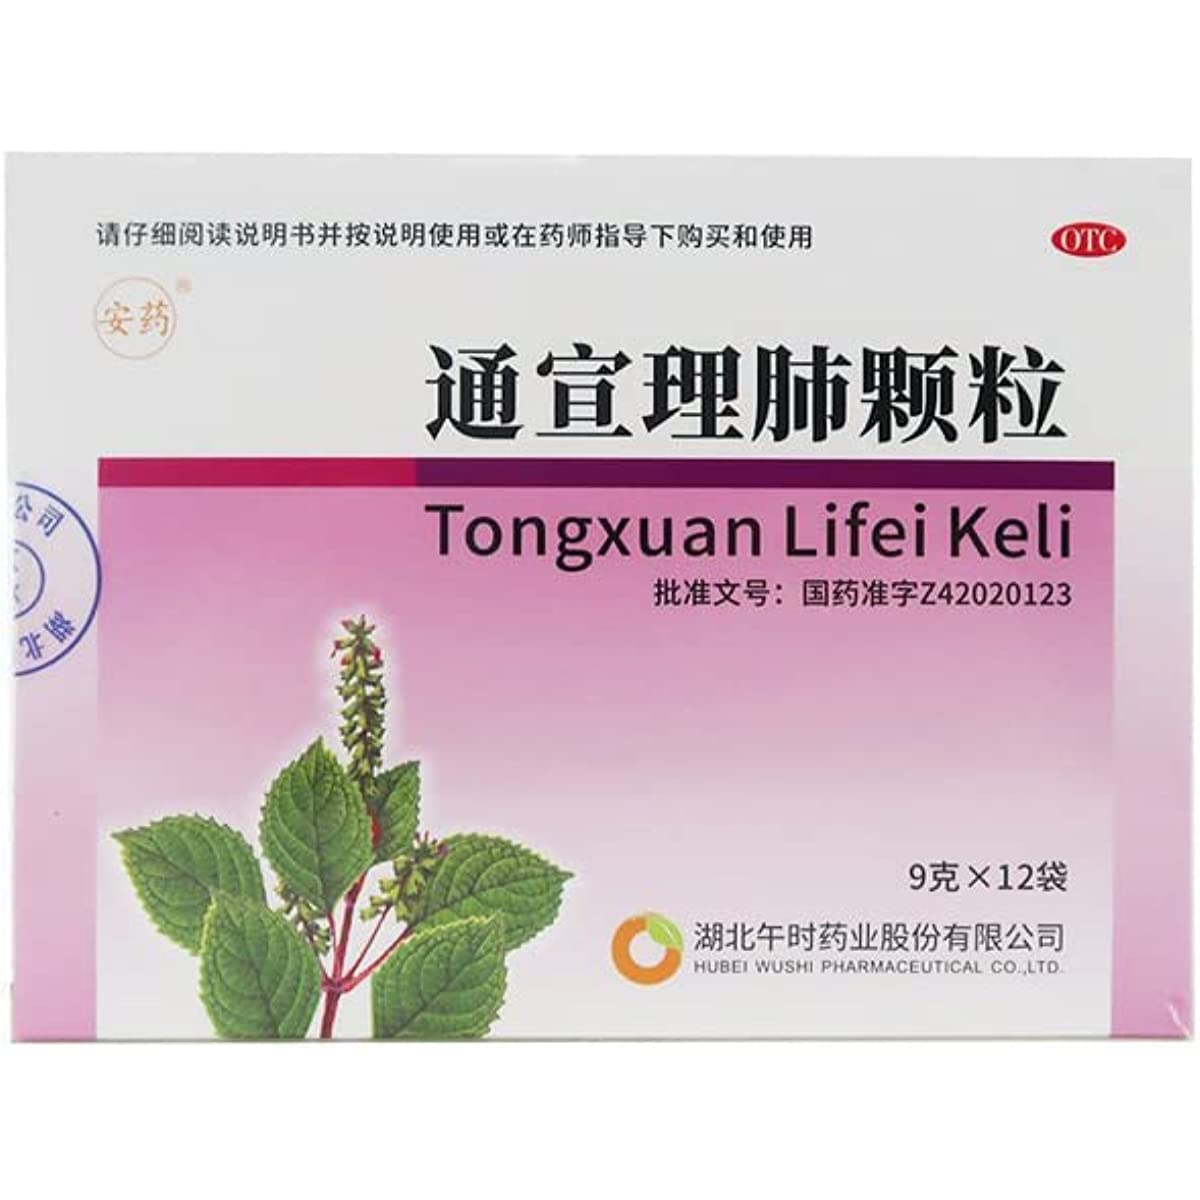 1 Box, Tongxuan Lifei Keli 9g*12 Bags / Box 通宣理肺颗粒